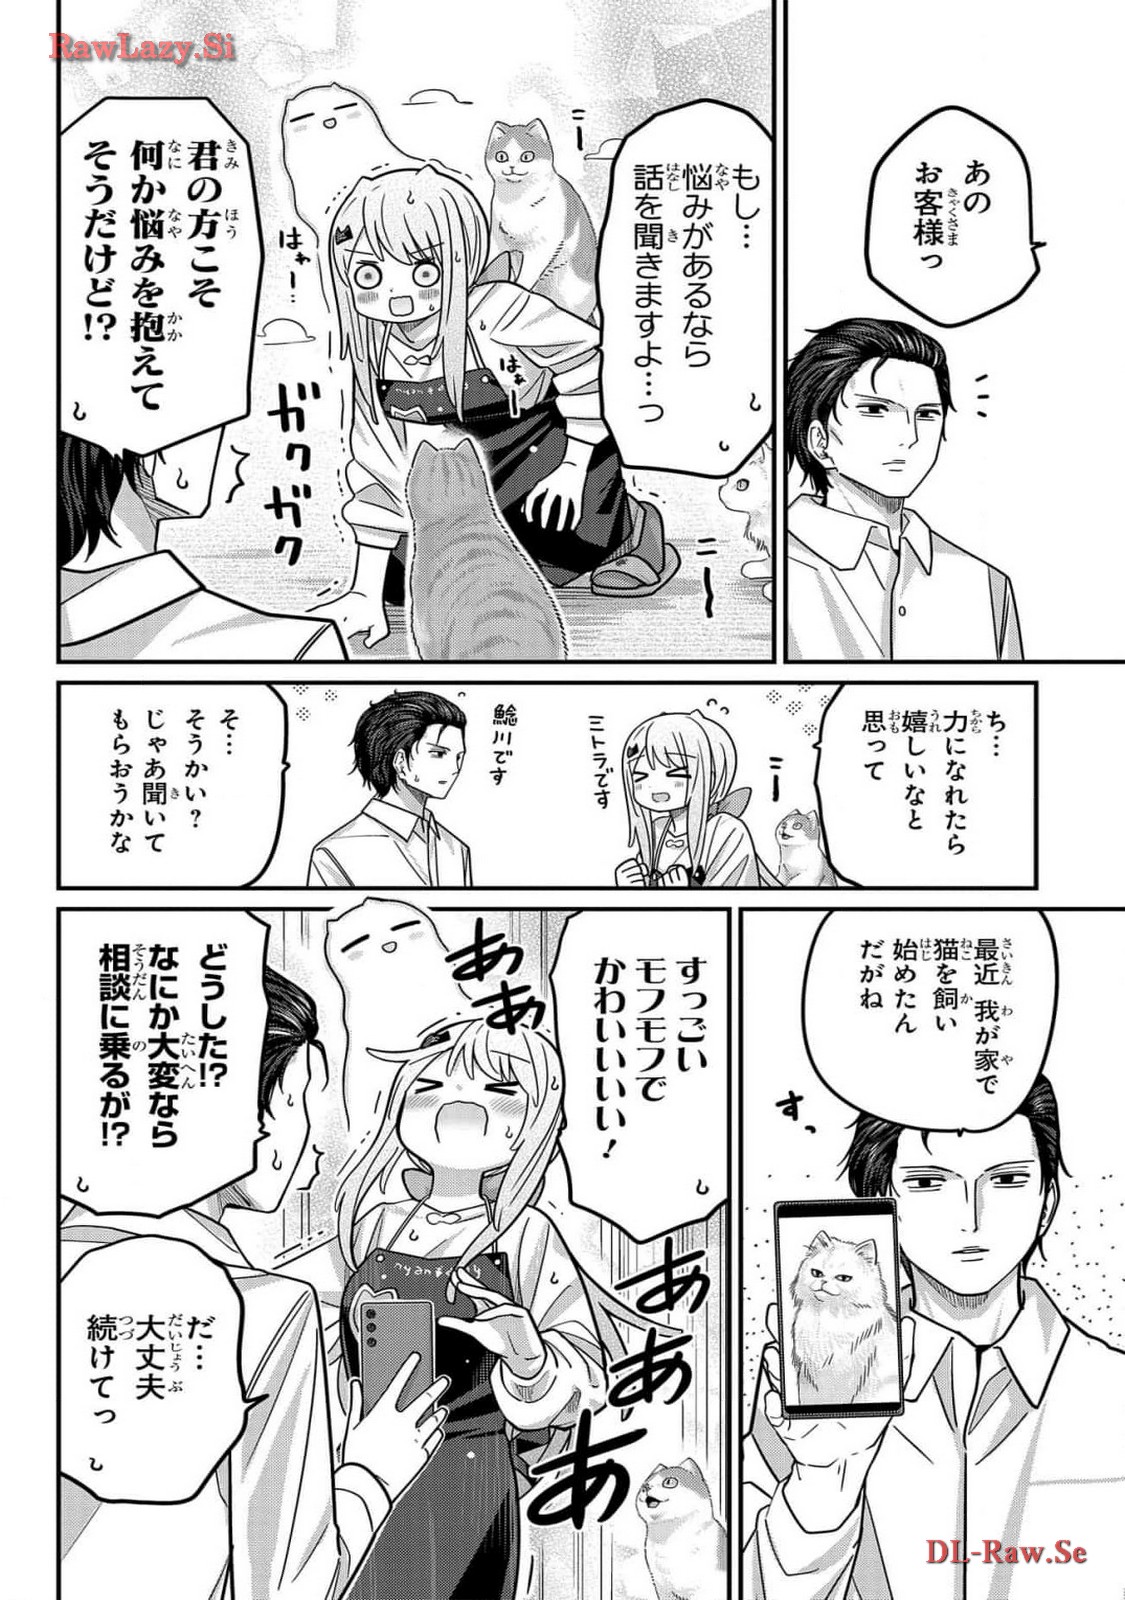 Kawaisugi Crisis - Chapter 99 - Page 6